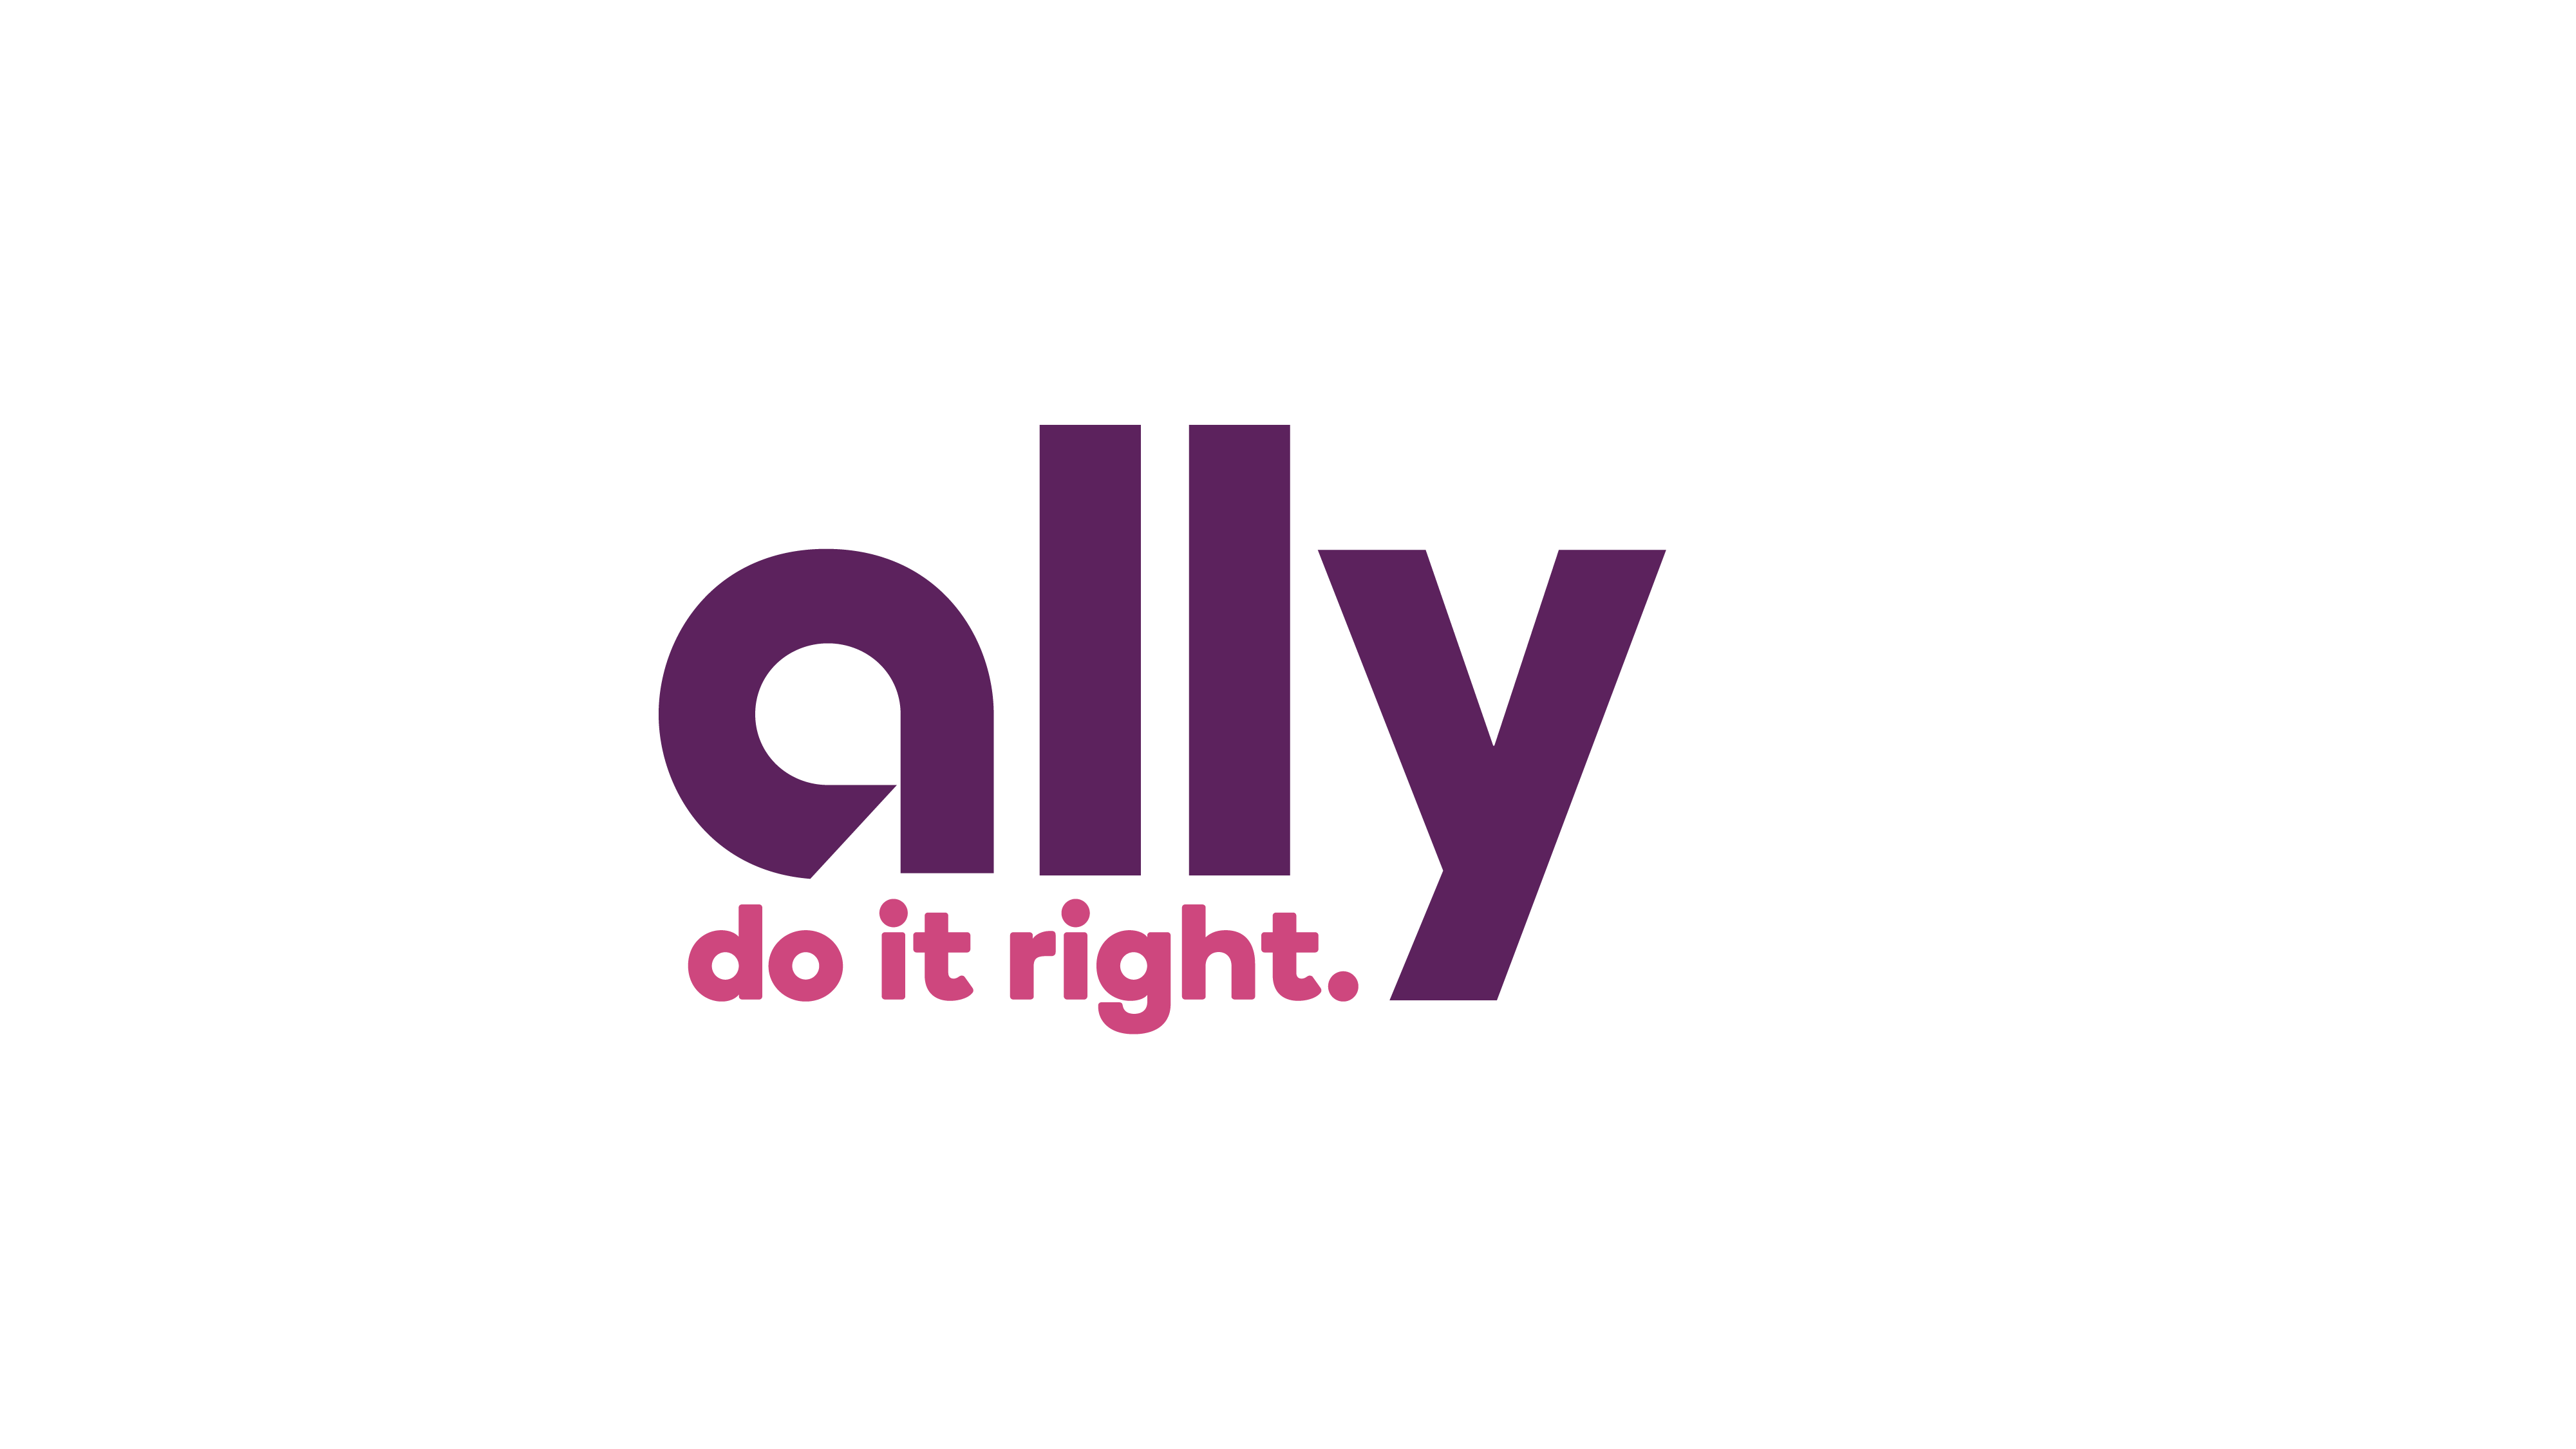 Ally Logo do it right